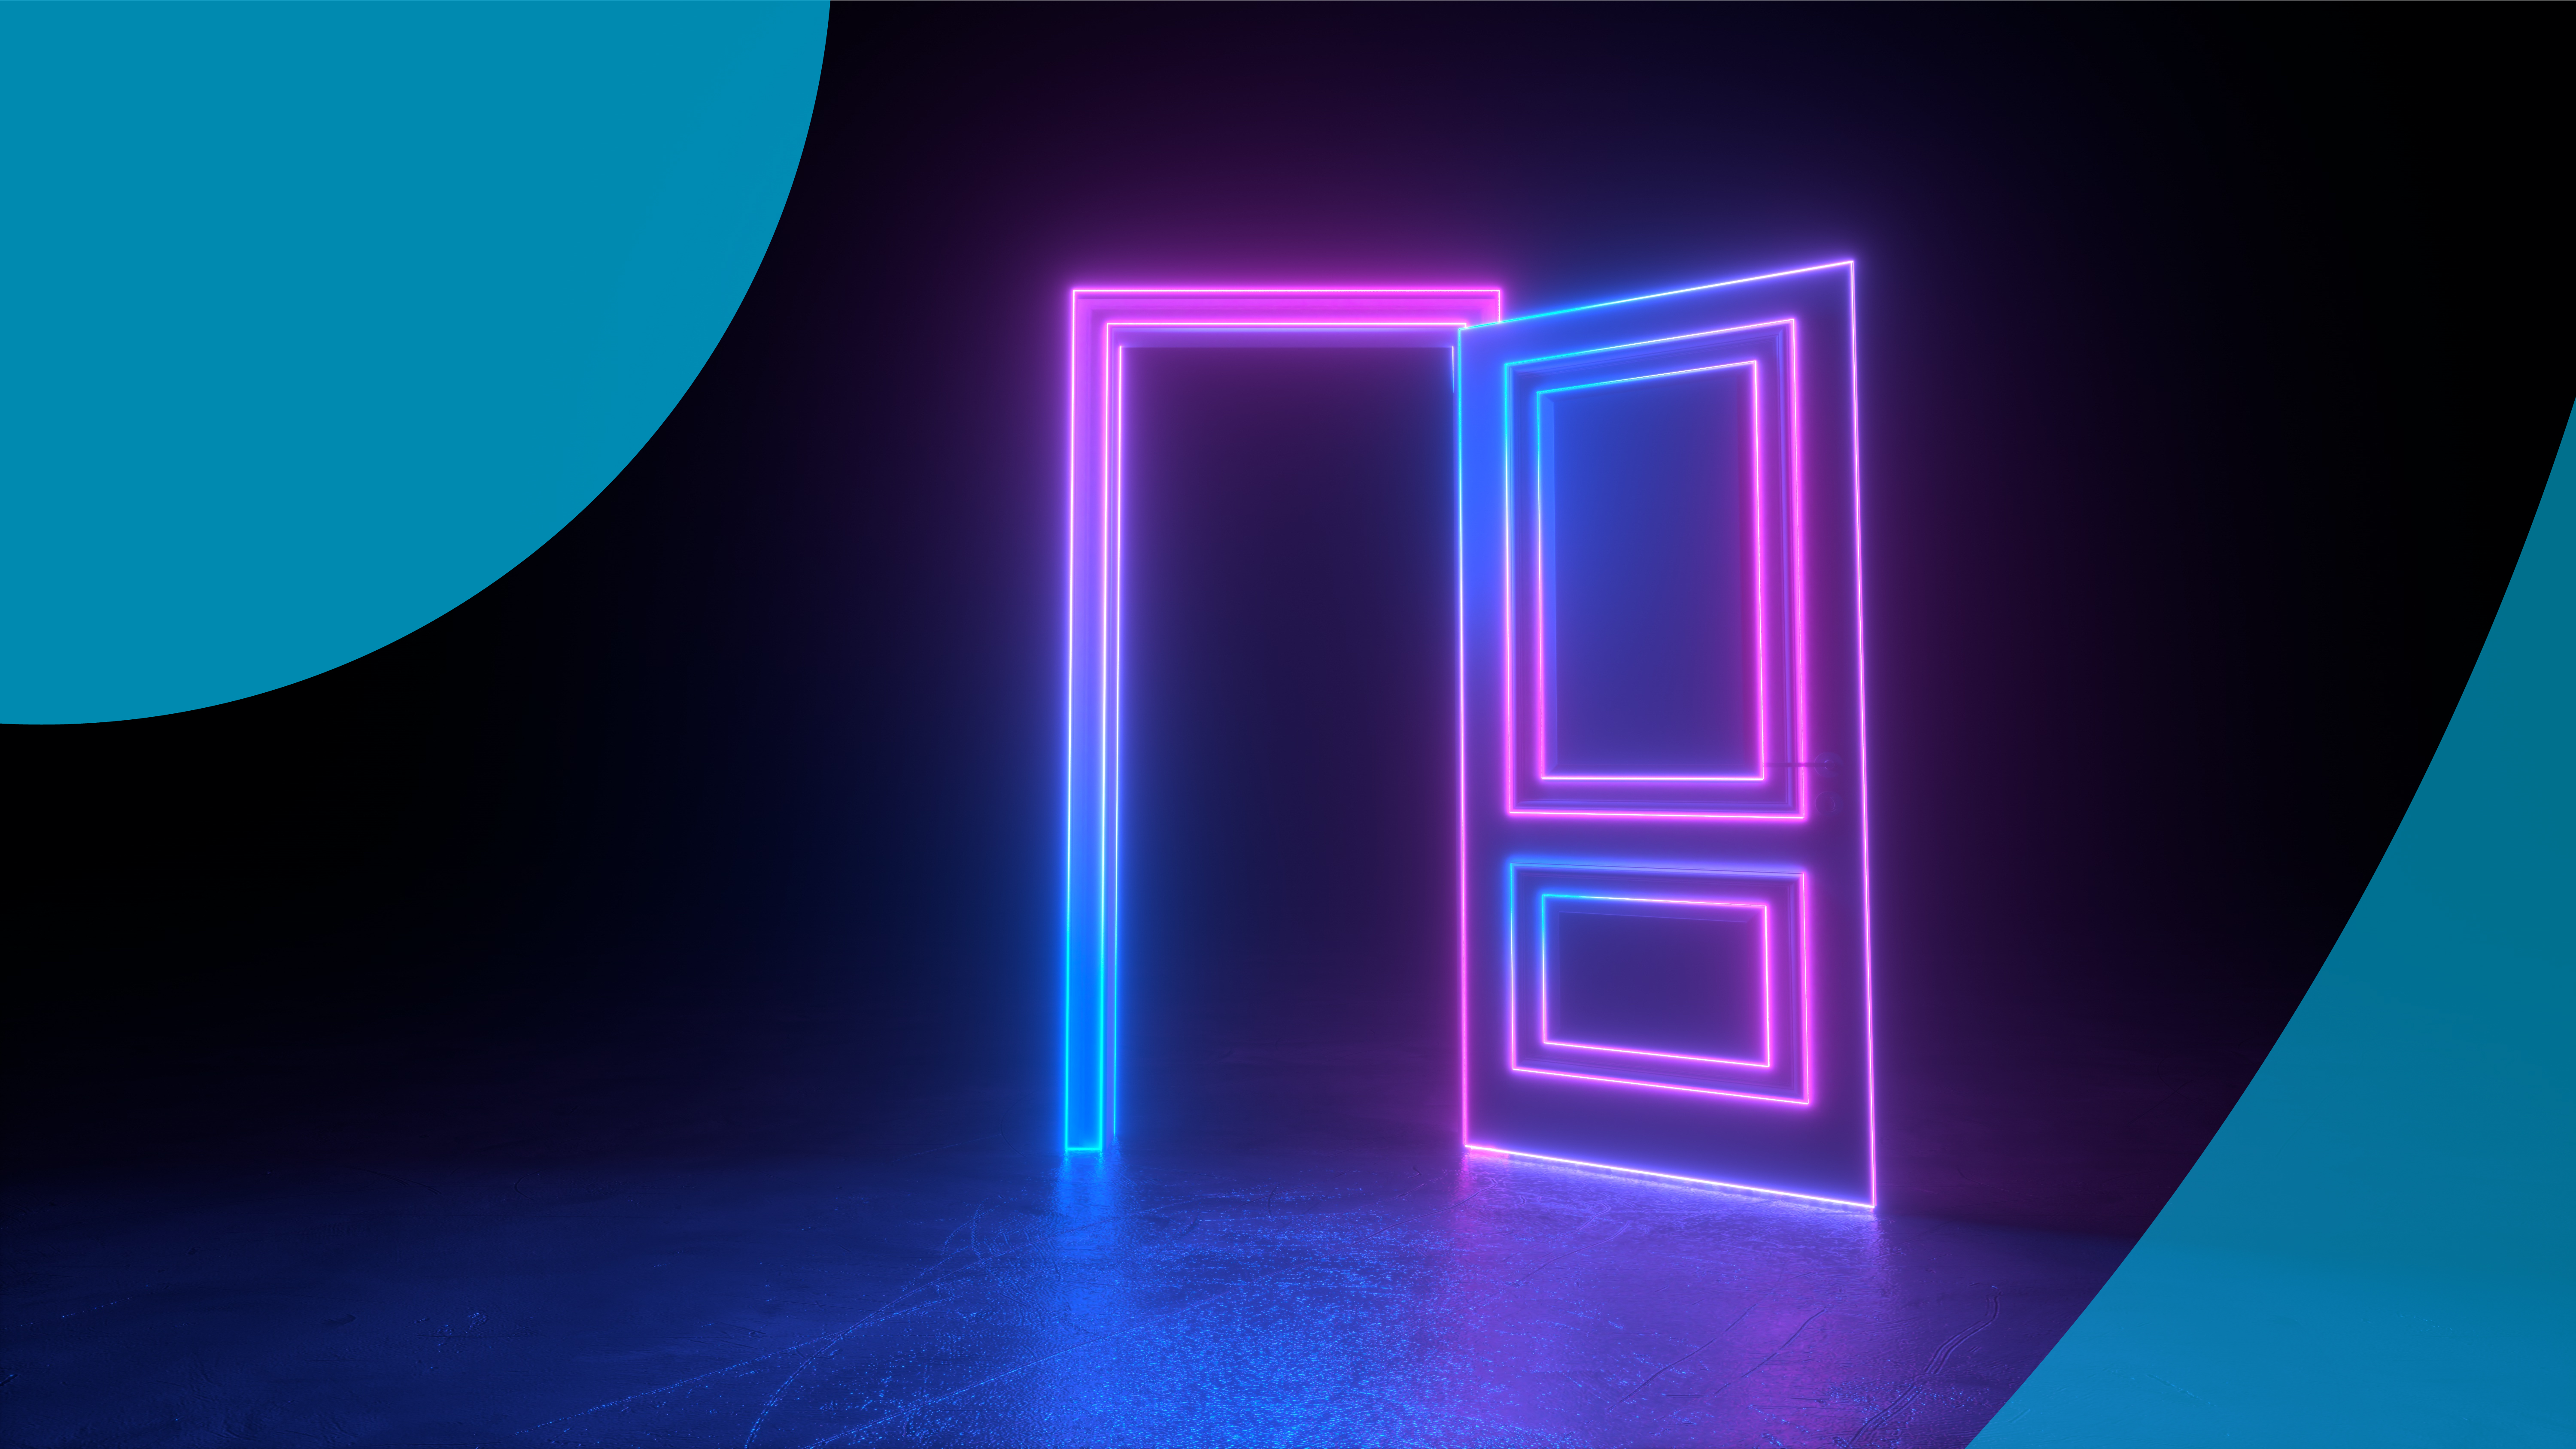 The Importance of a Digital Front Door in Healthcare feature image - a neon door outline represents the digital front door